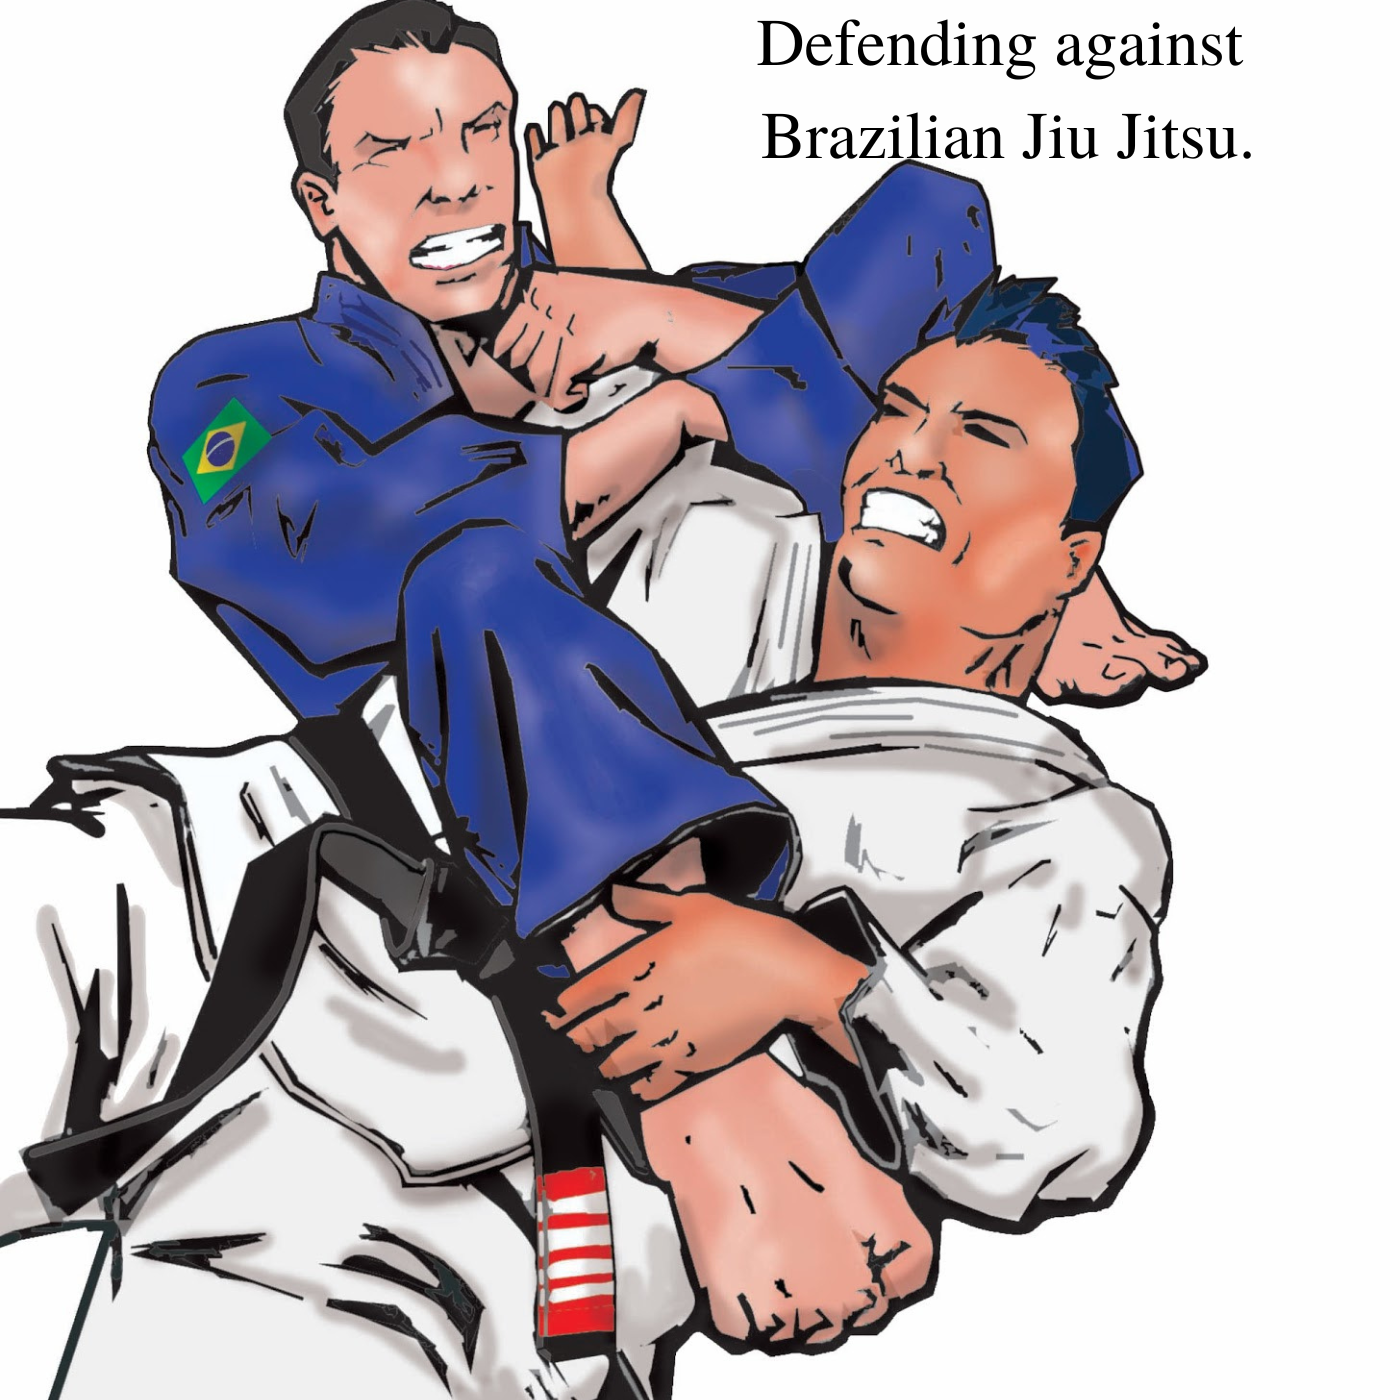 Defending against Brazilian Jiu Jitsu.